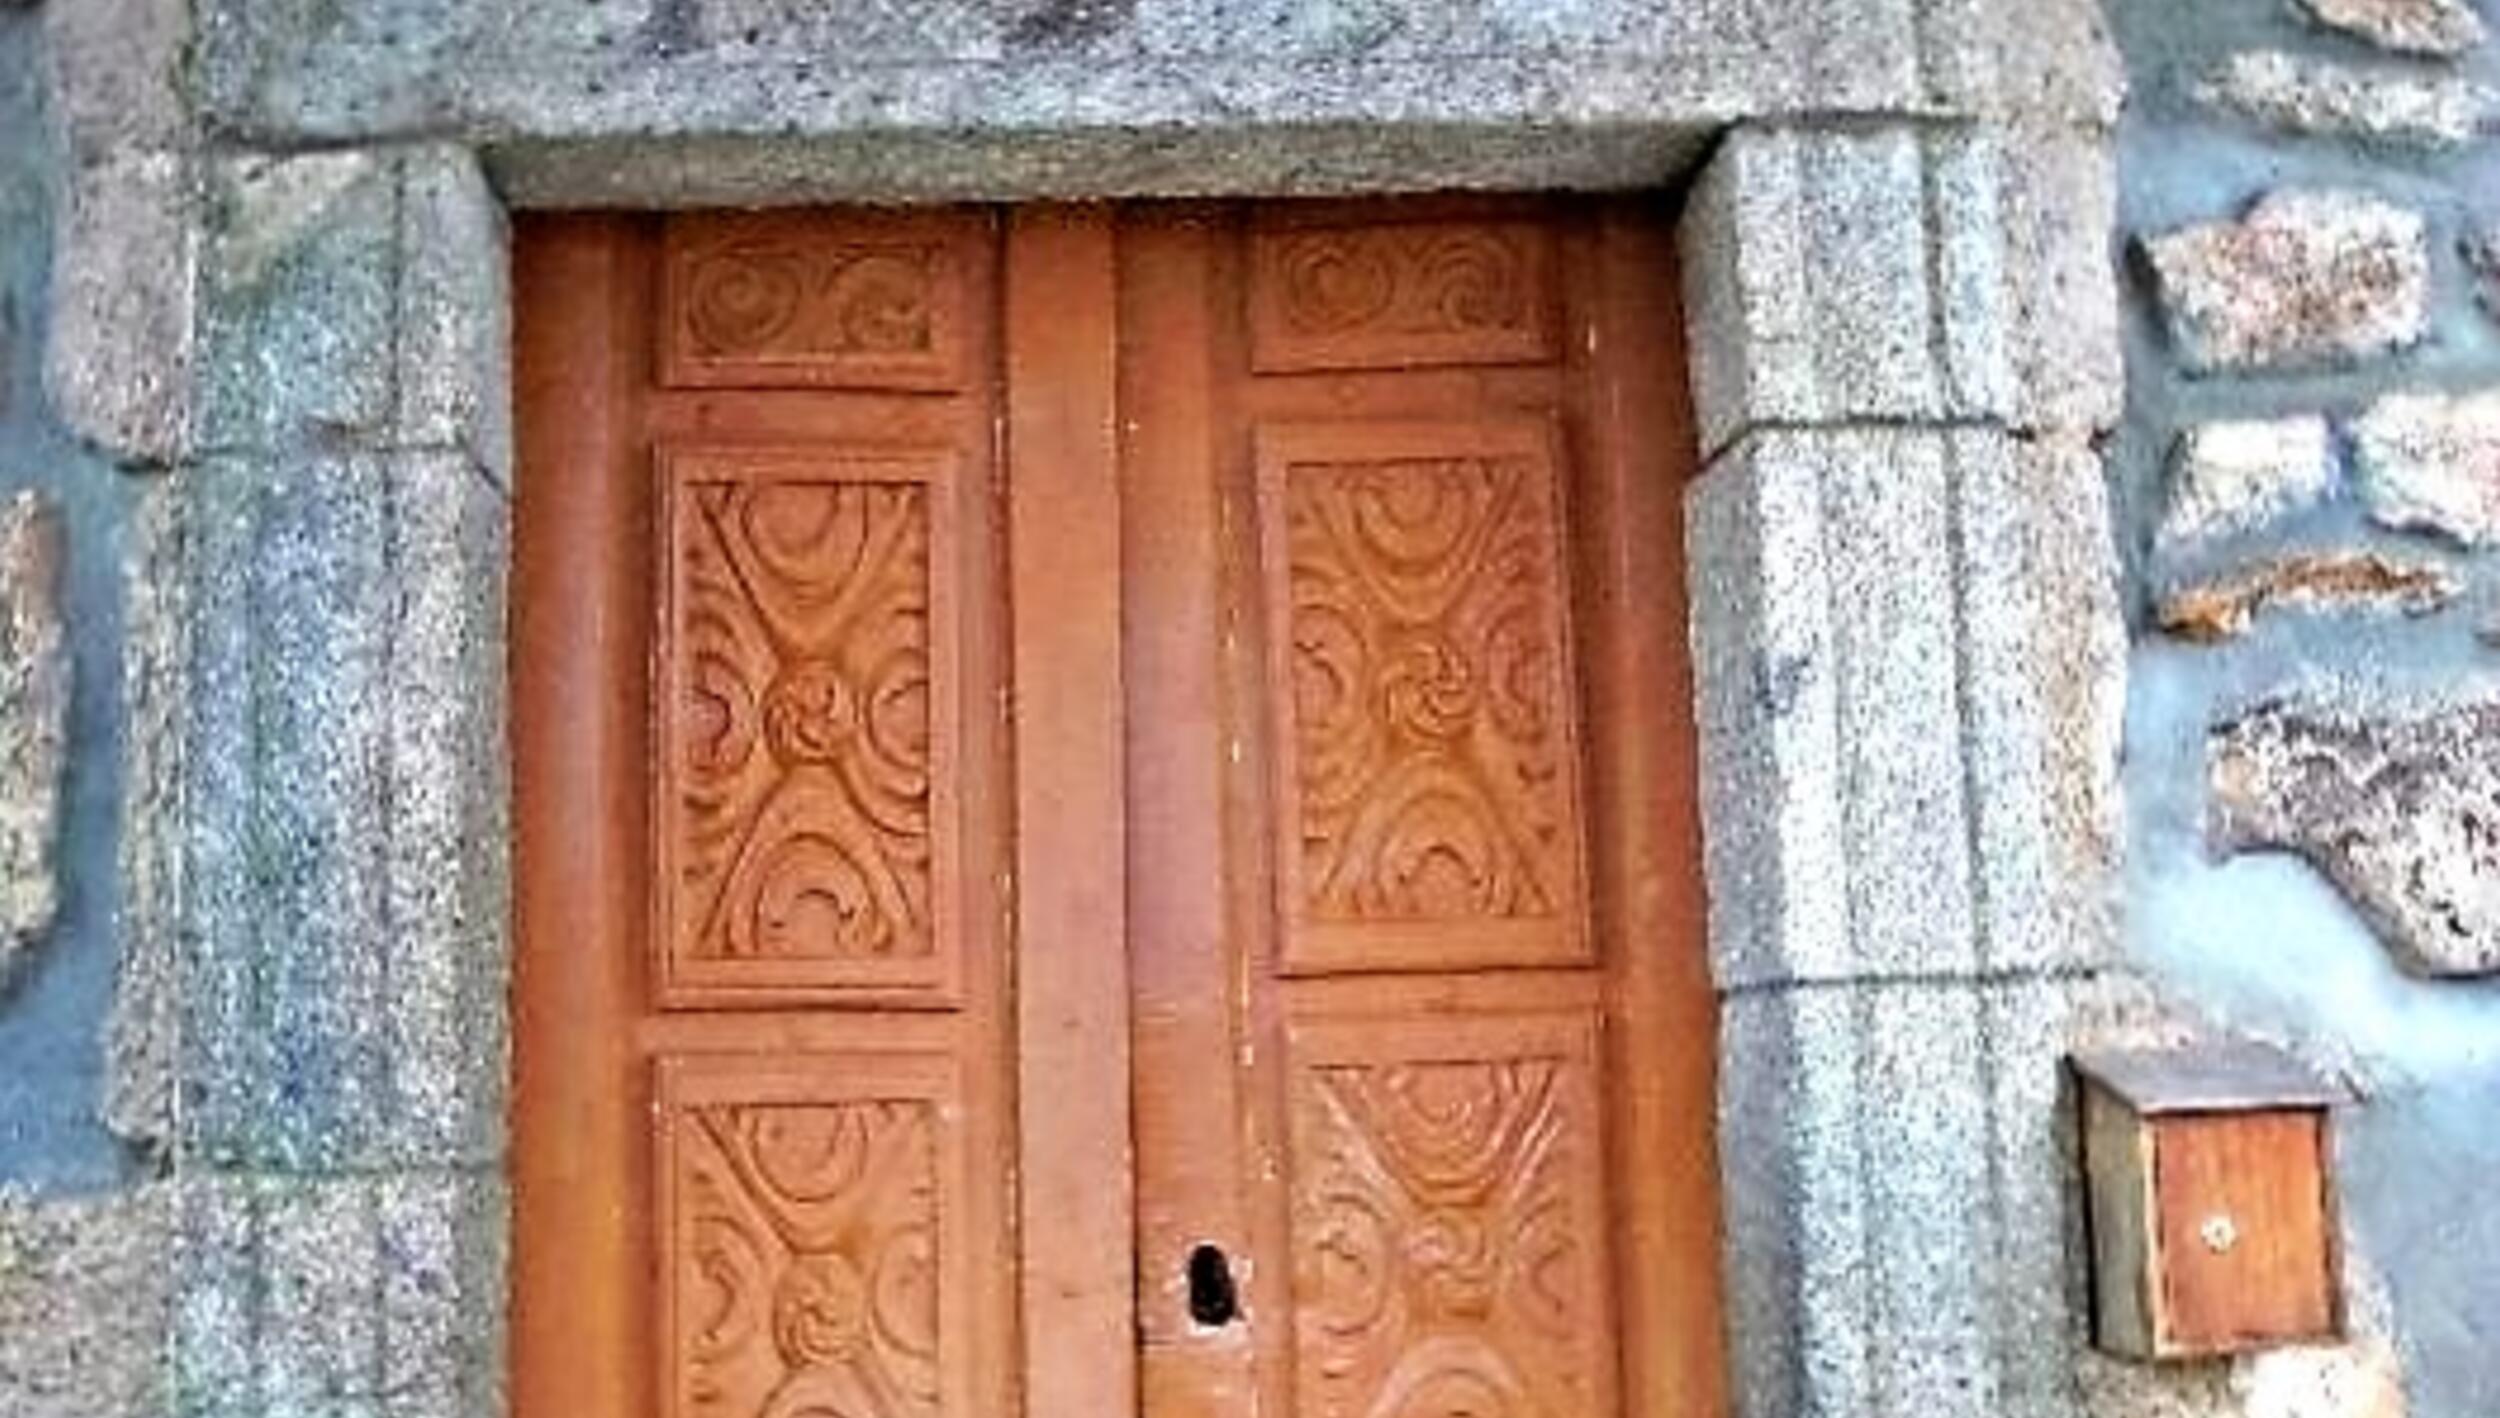 Porta da igreja